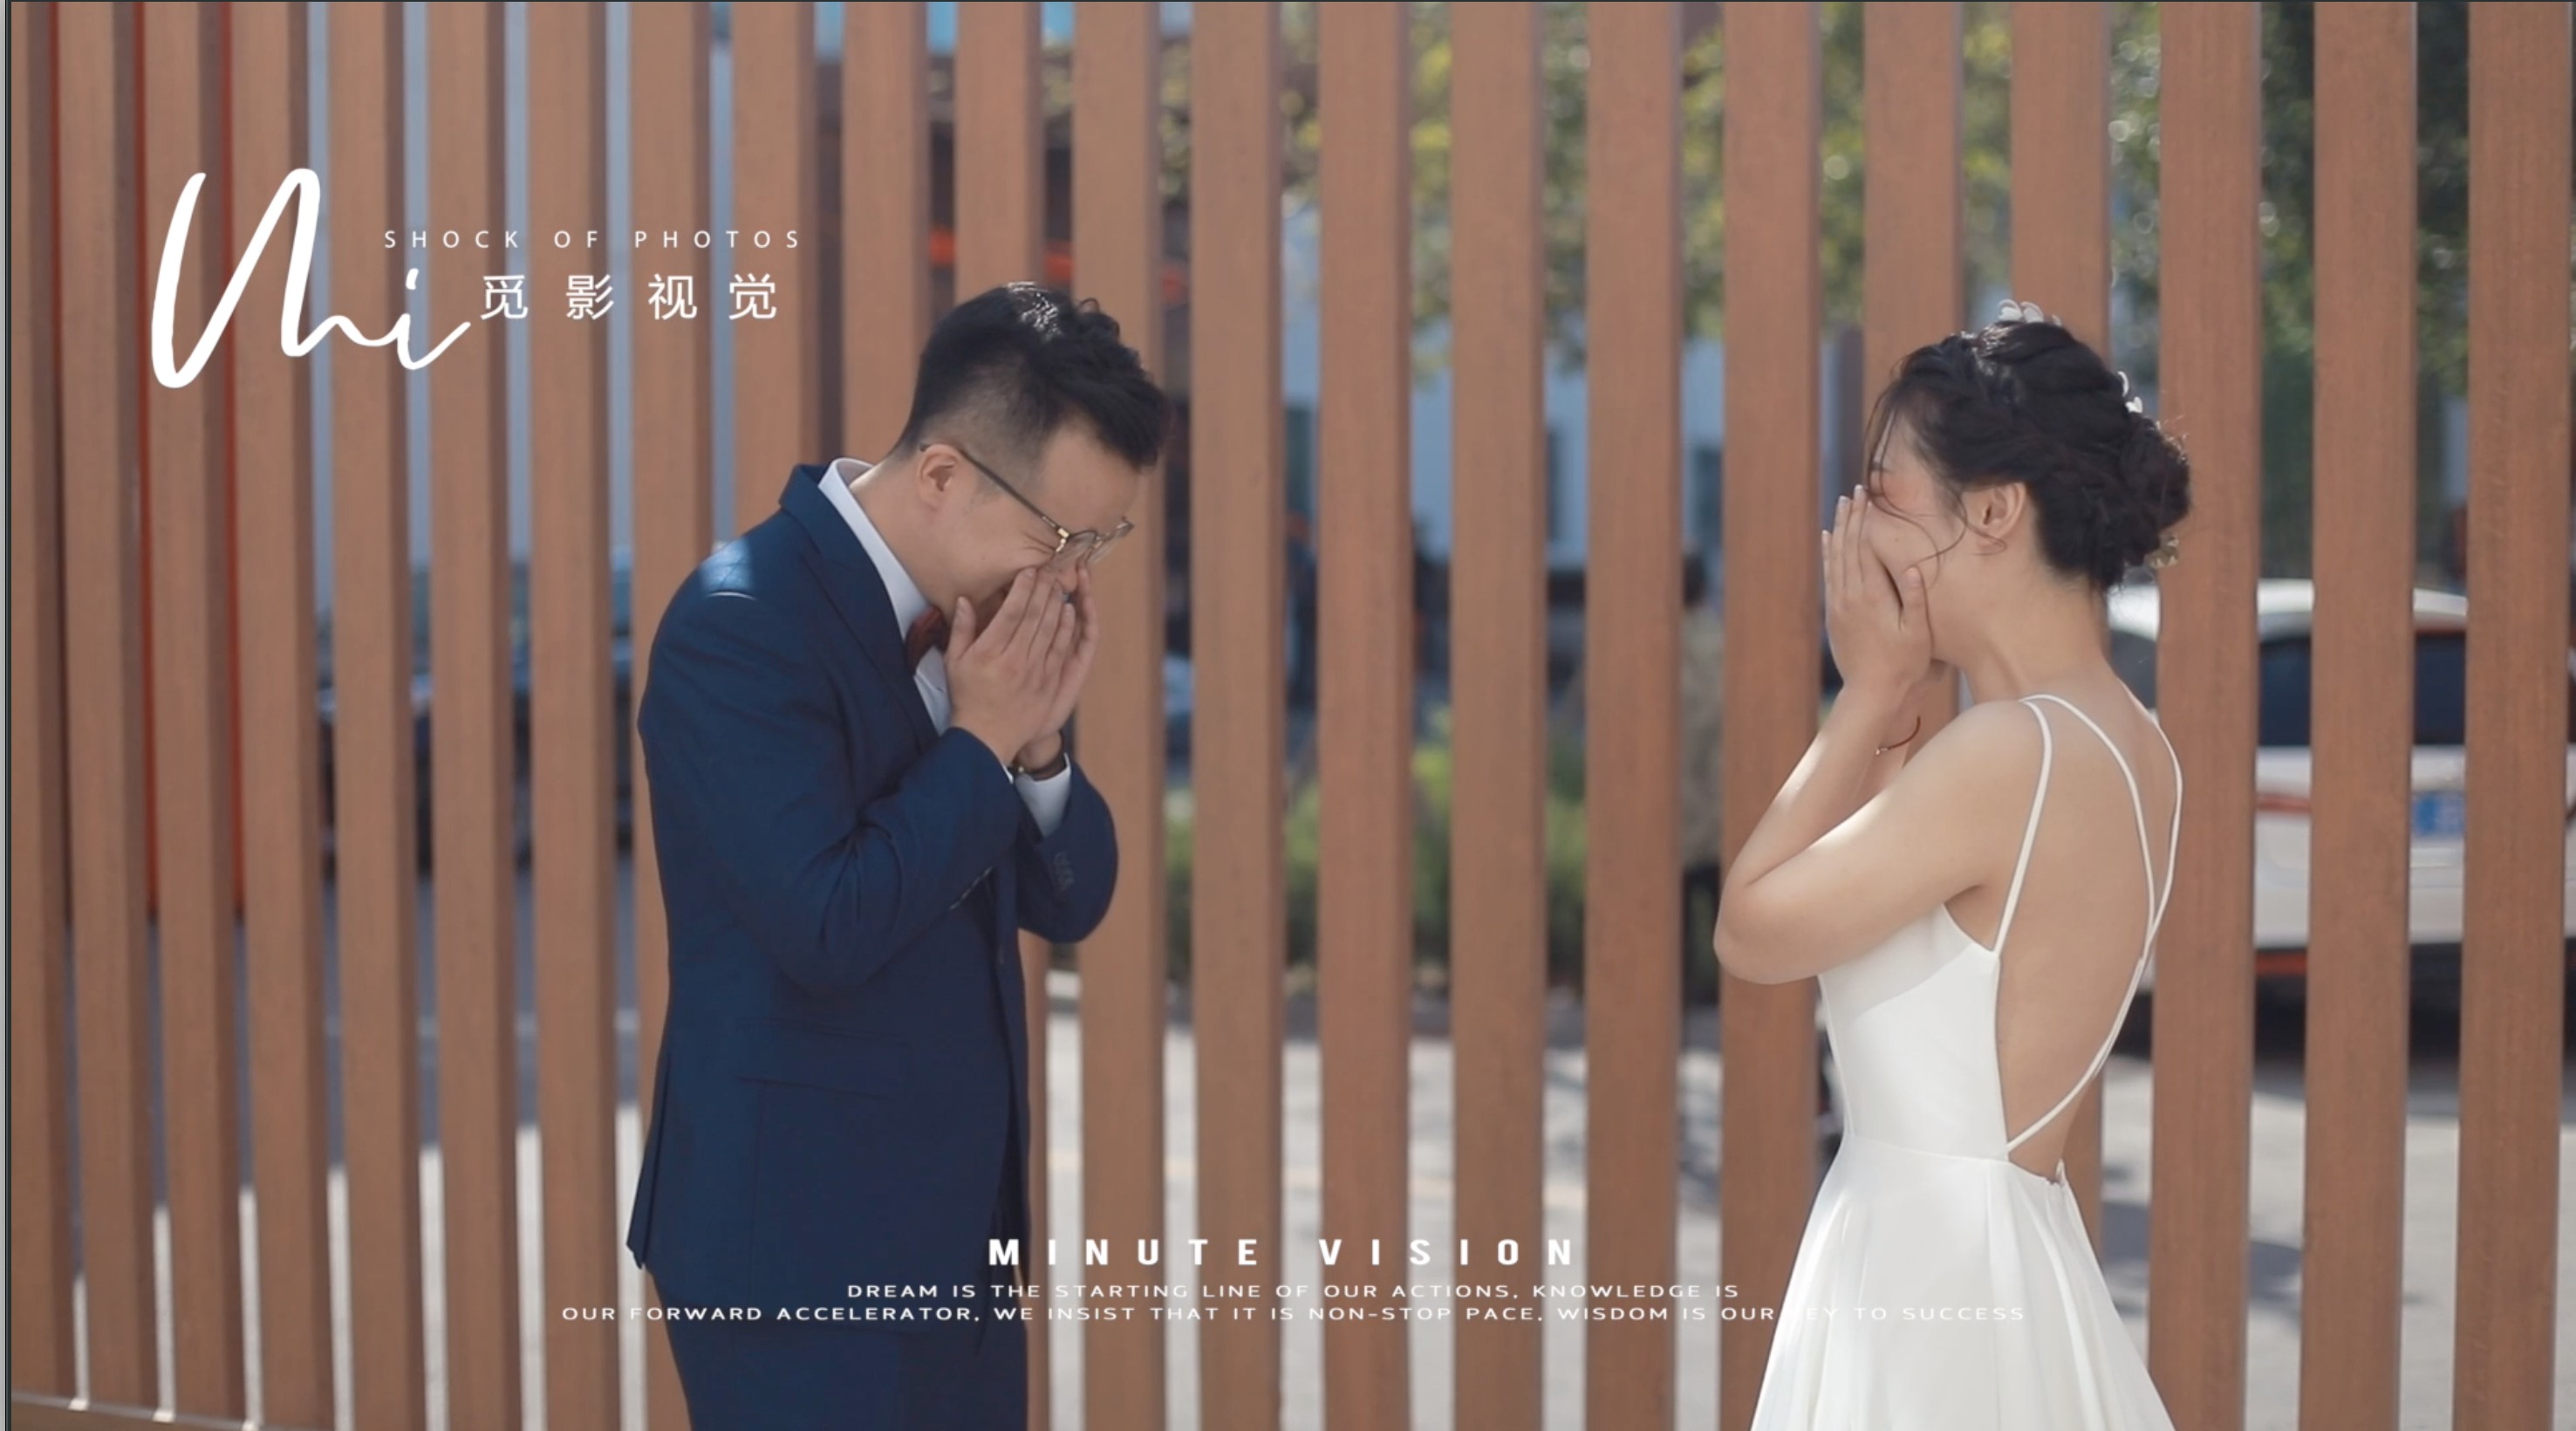 【SUN&HUANG】2019.10.01婚礼电影|觅影视觉出品 